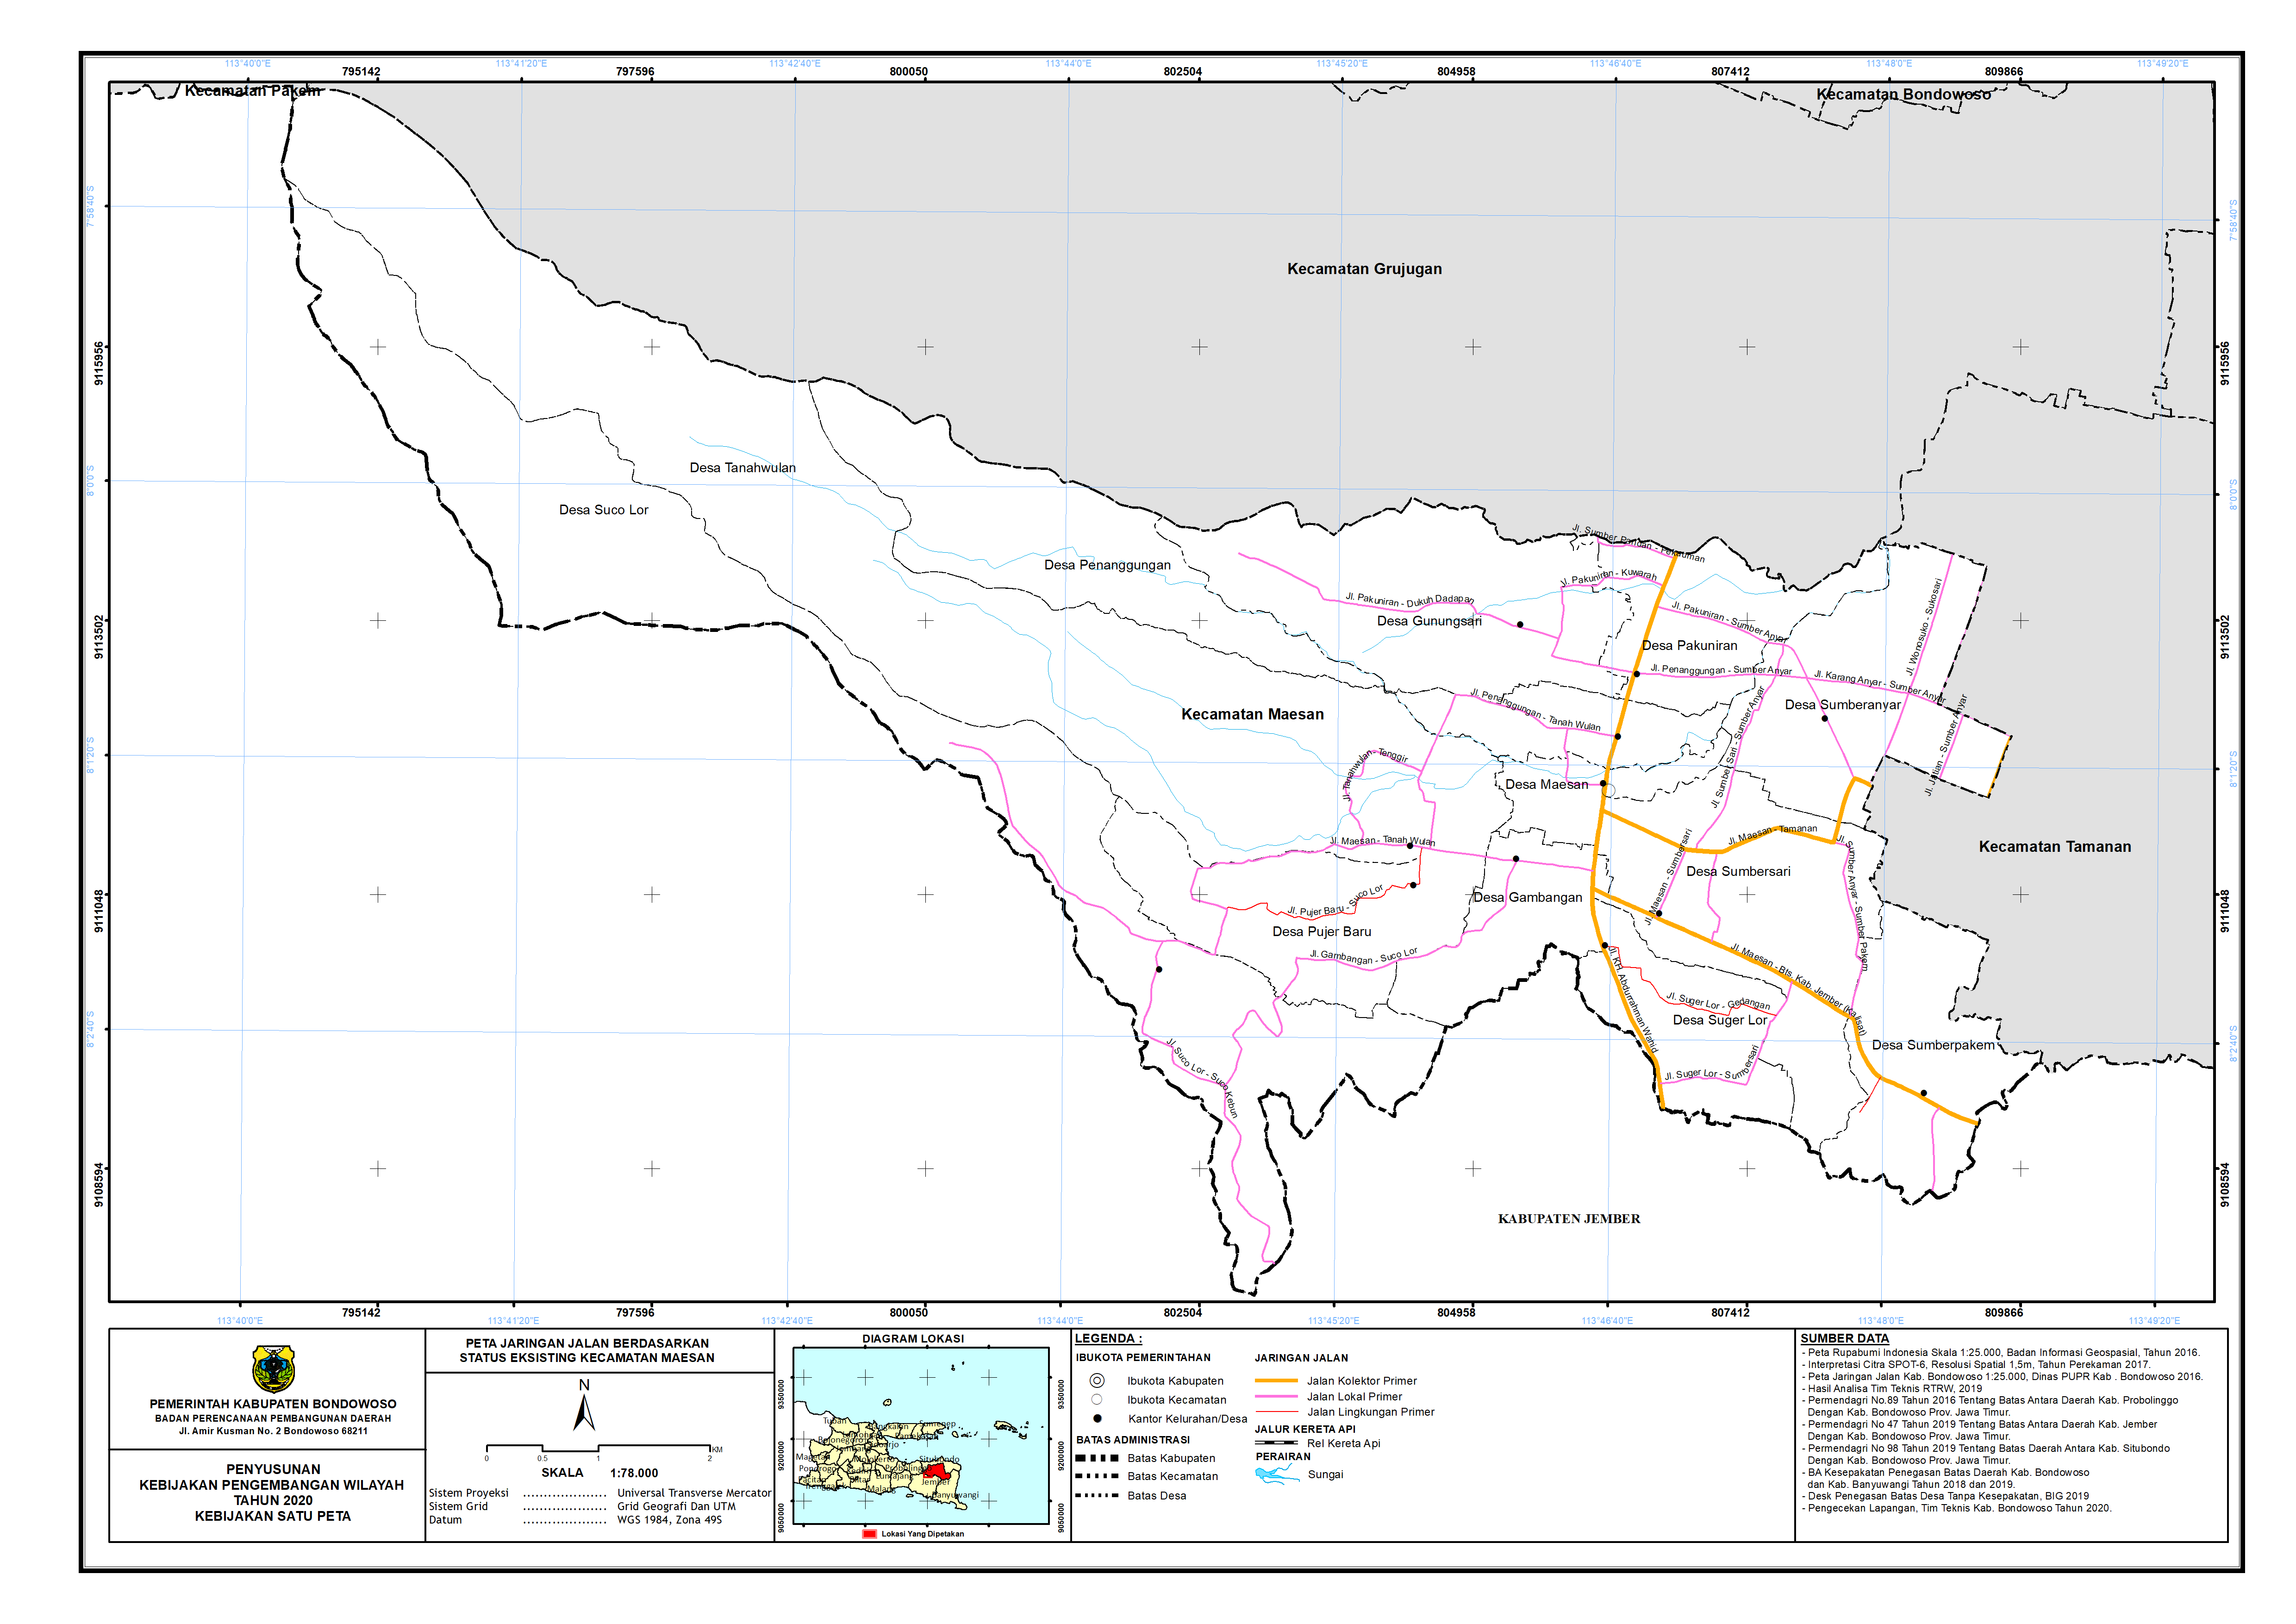 Peta Jaringan Jalan Berdasarkan Status Eksisting Kecamatan Maesan.png